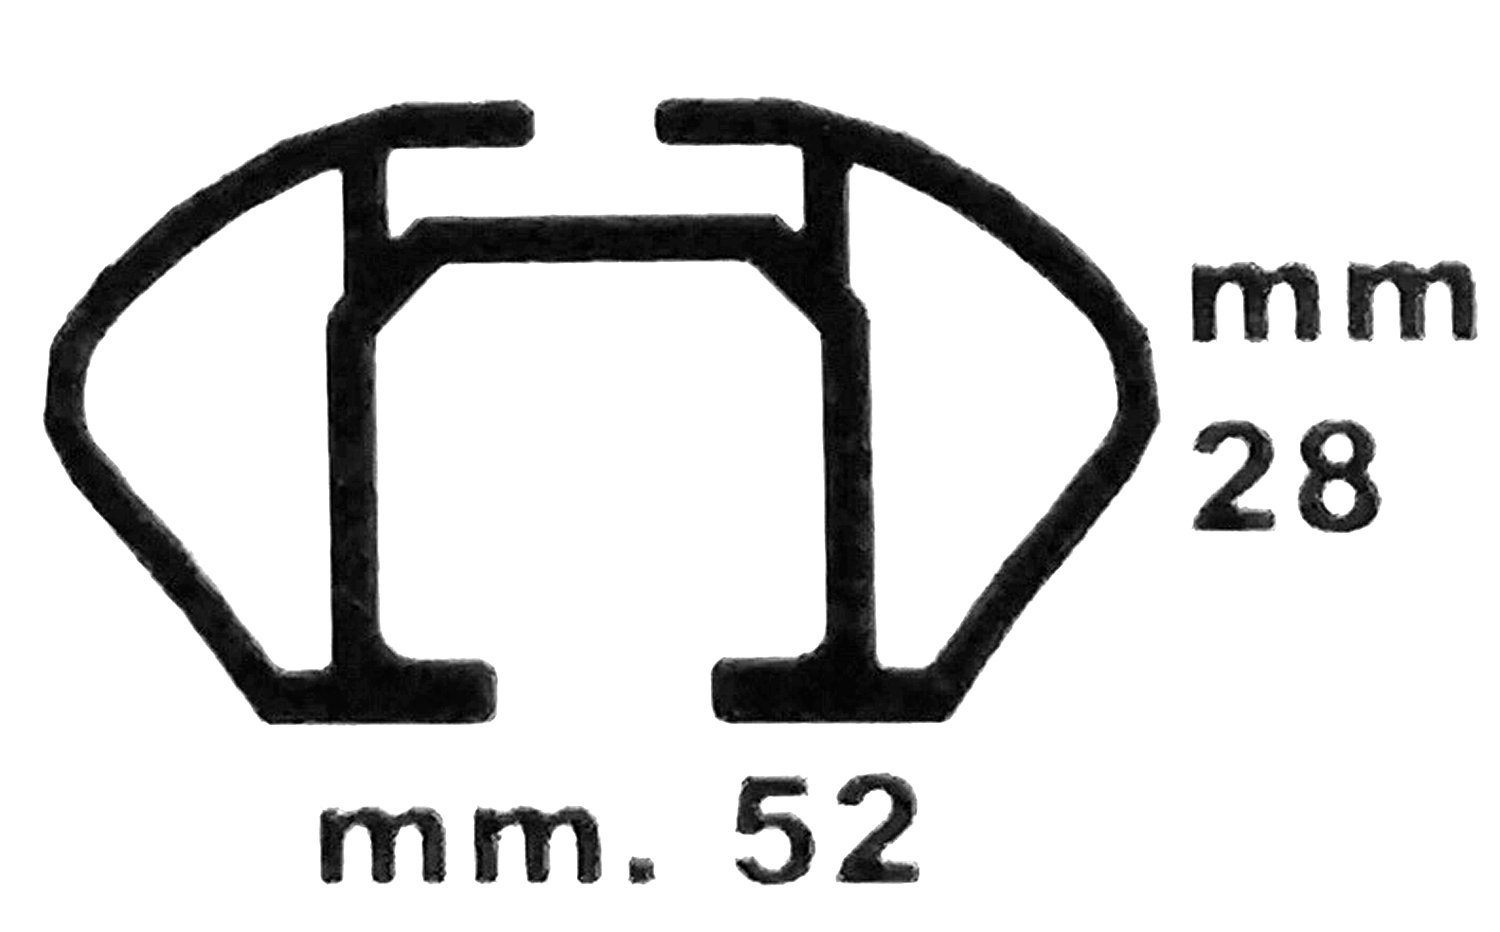 VDP Dachbox, (Für Ihren Volkswagen Passat im + Variant 11-14 VDP Türer) kompatibel Variant (5 (B7) KING1 Dachbox Dachträger 11-14, Dachträger/Relingträger VDPJUXT600 (5 (B7) Volkswagen Set), abschließbar und 600Ltr Türer) Dachbox mit Passat